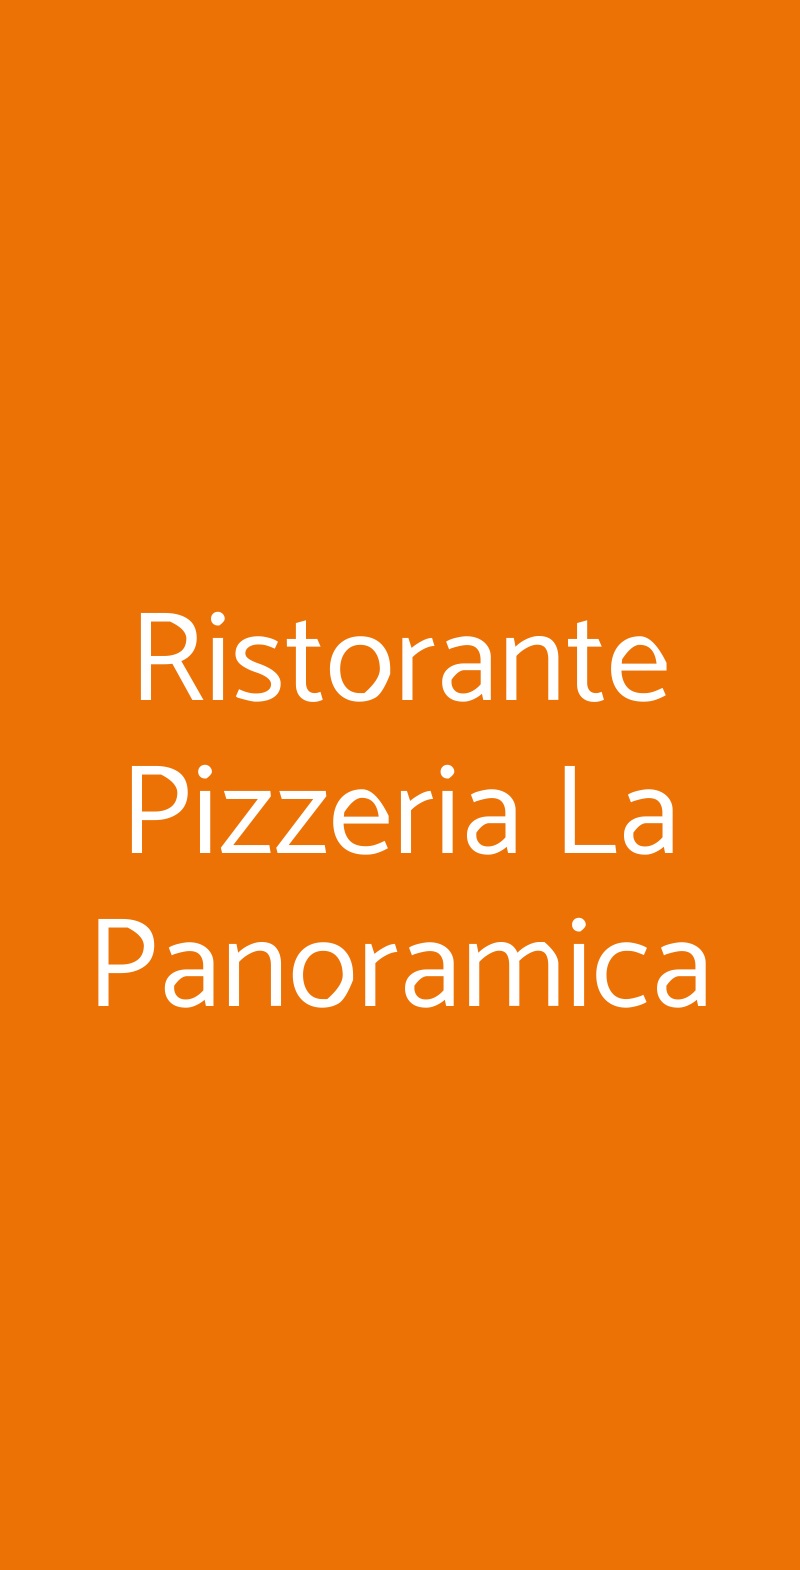 Ristorante Pizzeria La Panoramica Colognola ai Colli menù 1 pagina